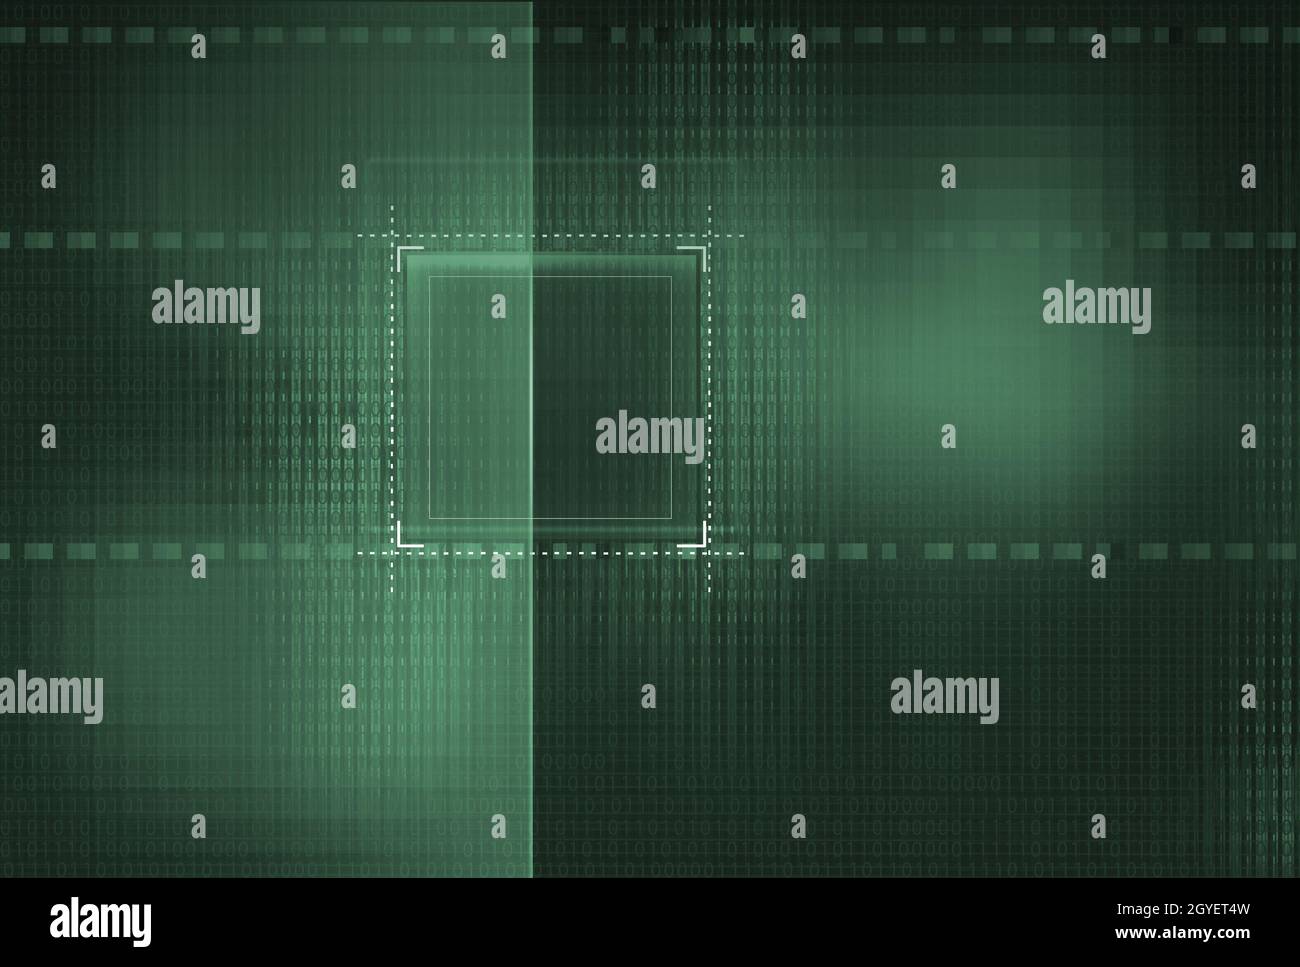 Abstrakter Binärcode-Hintergrund, Matrixeffekt mit Ziffern Stockfoto